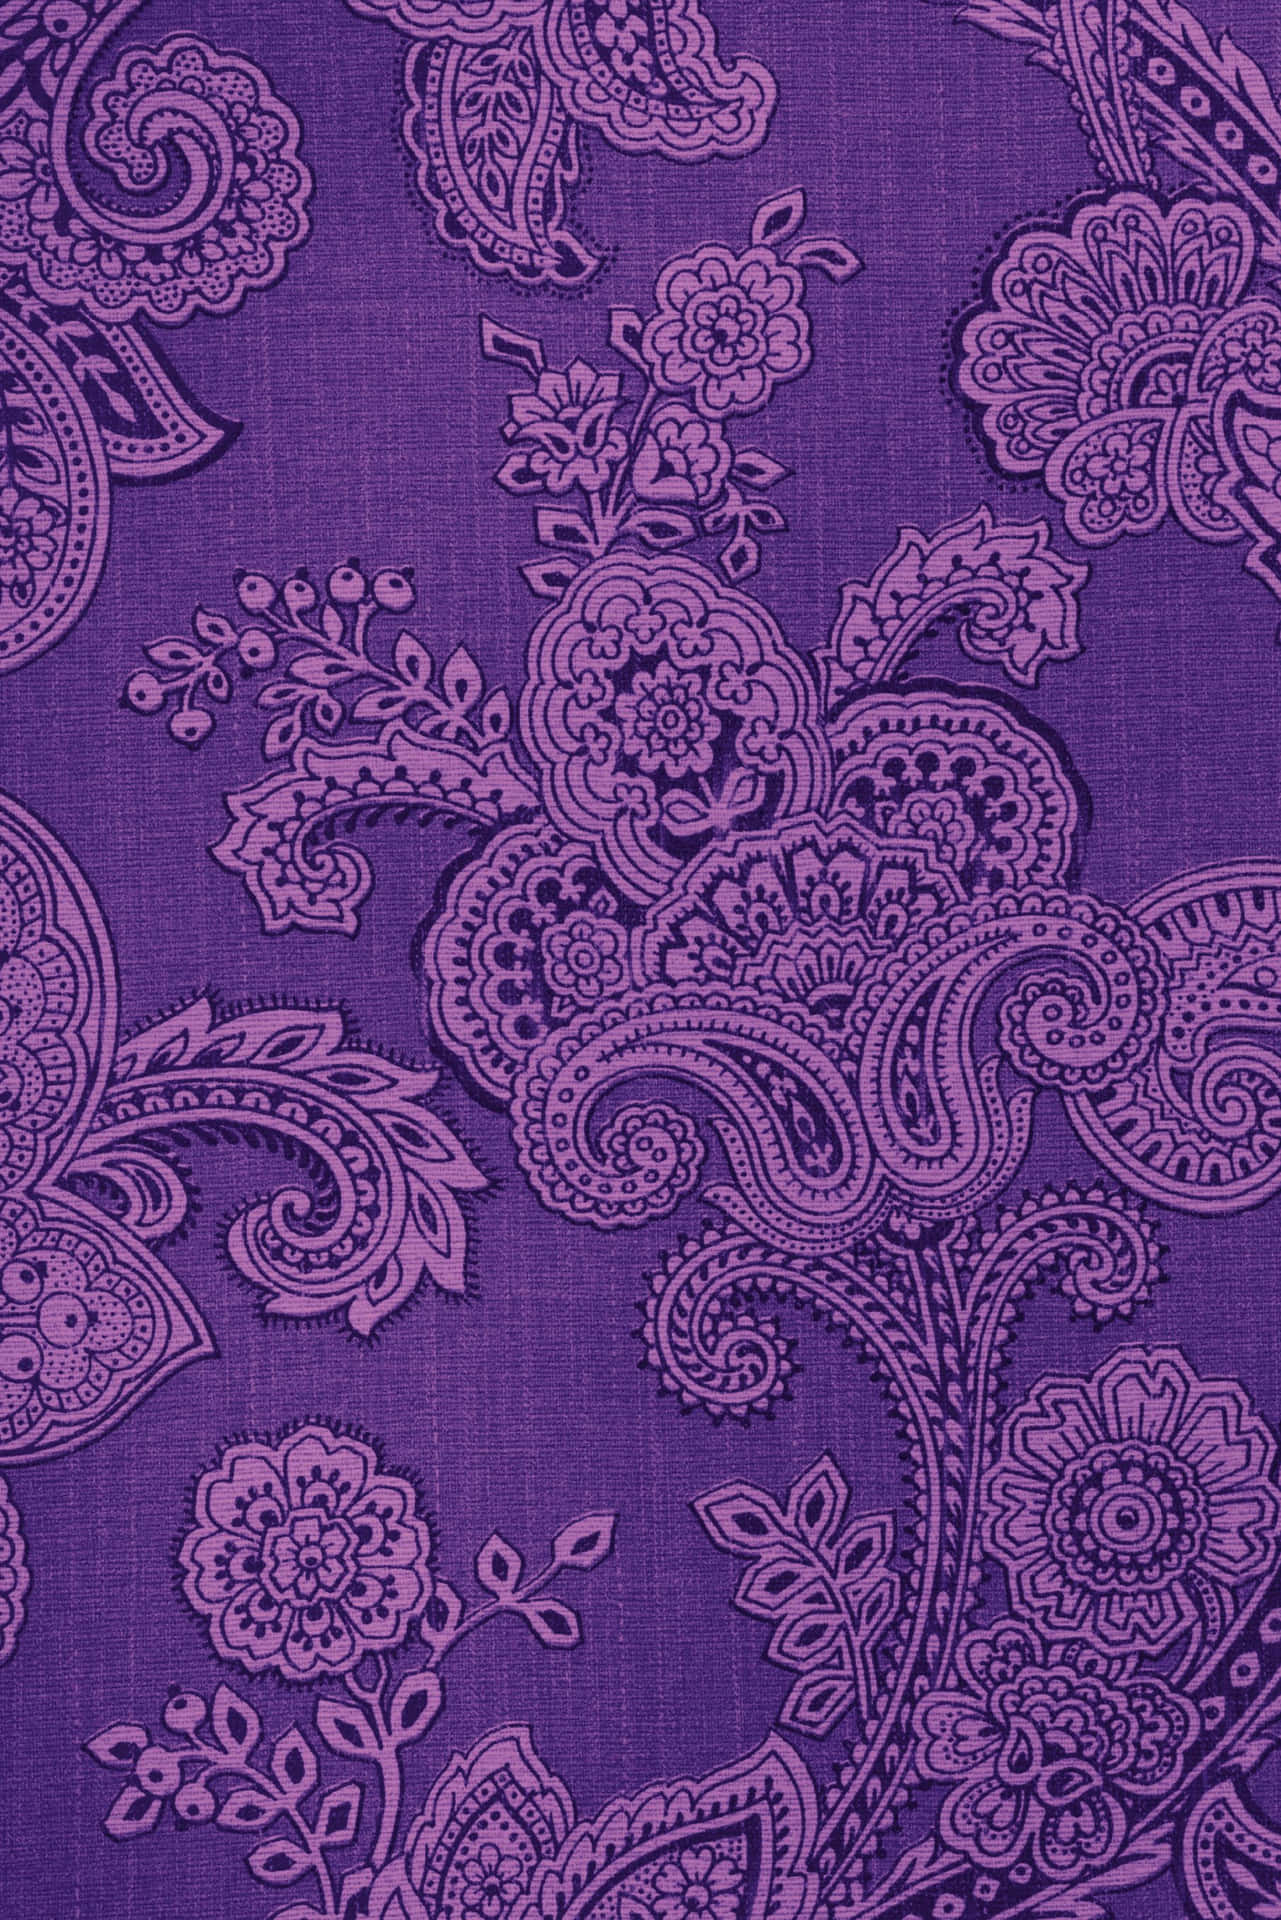 Et lilla paisley mønster på en stofagtig baggrund. Wallpaper